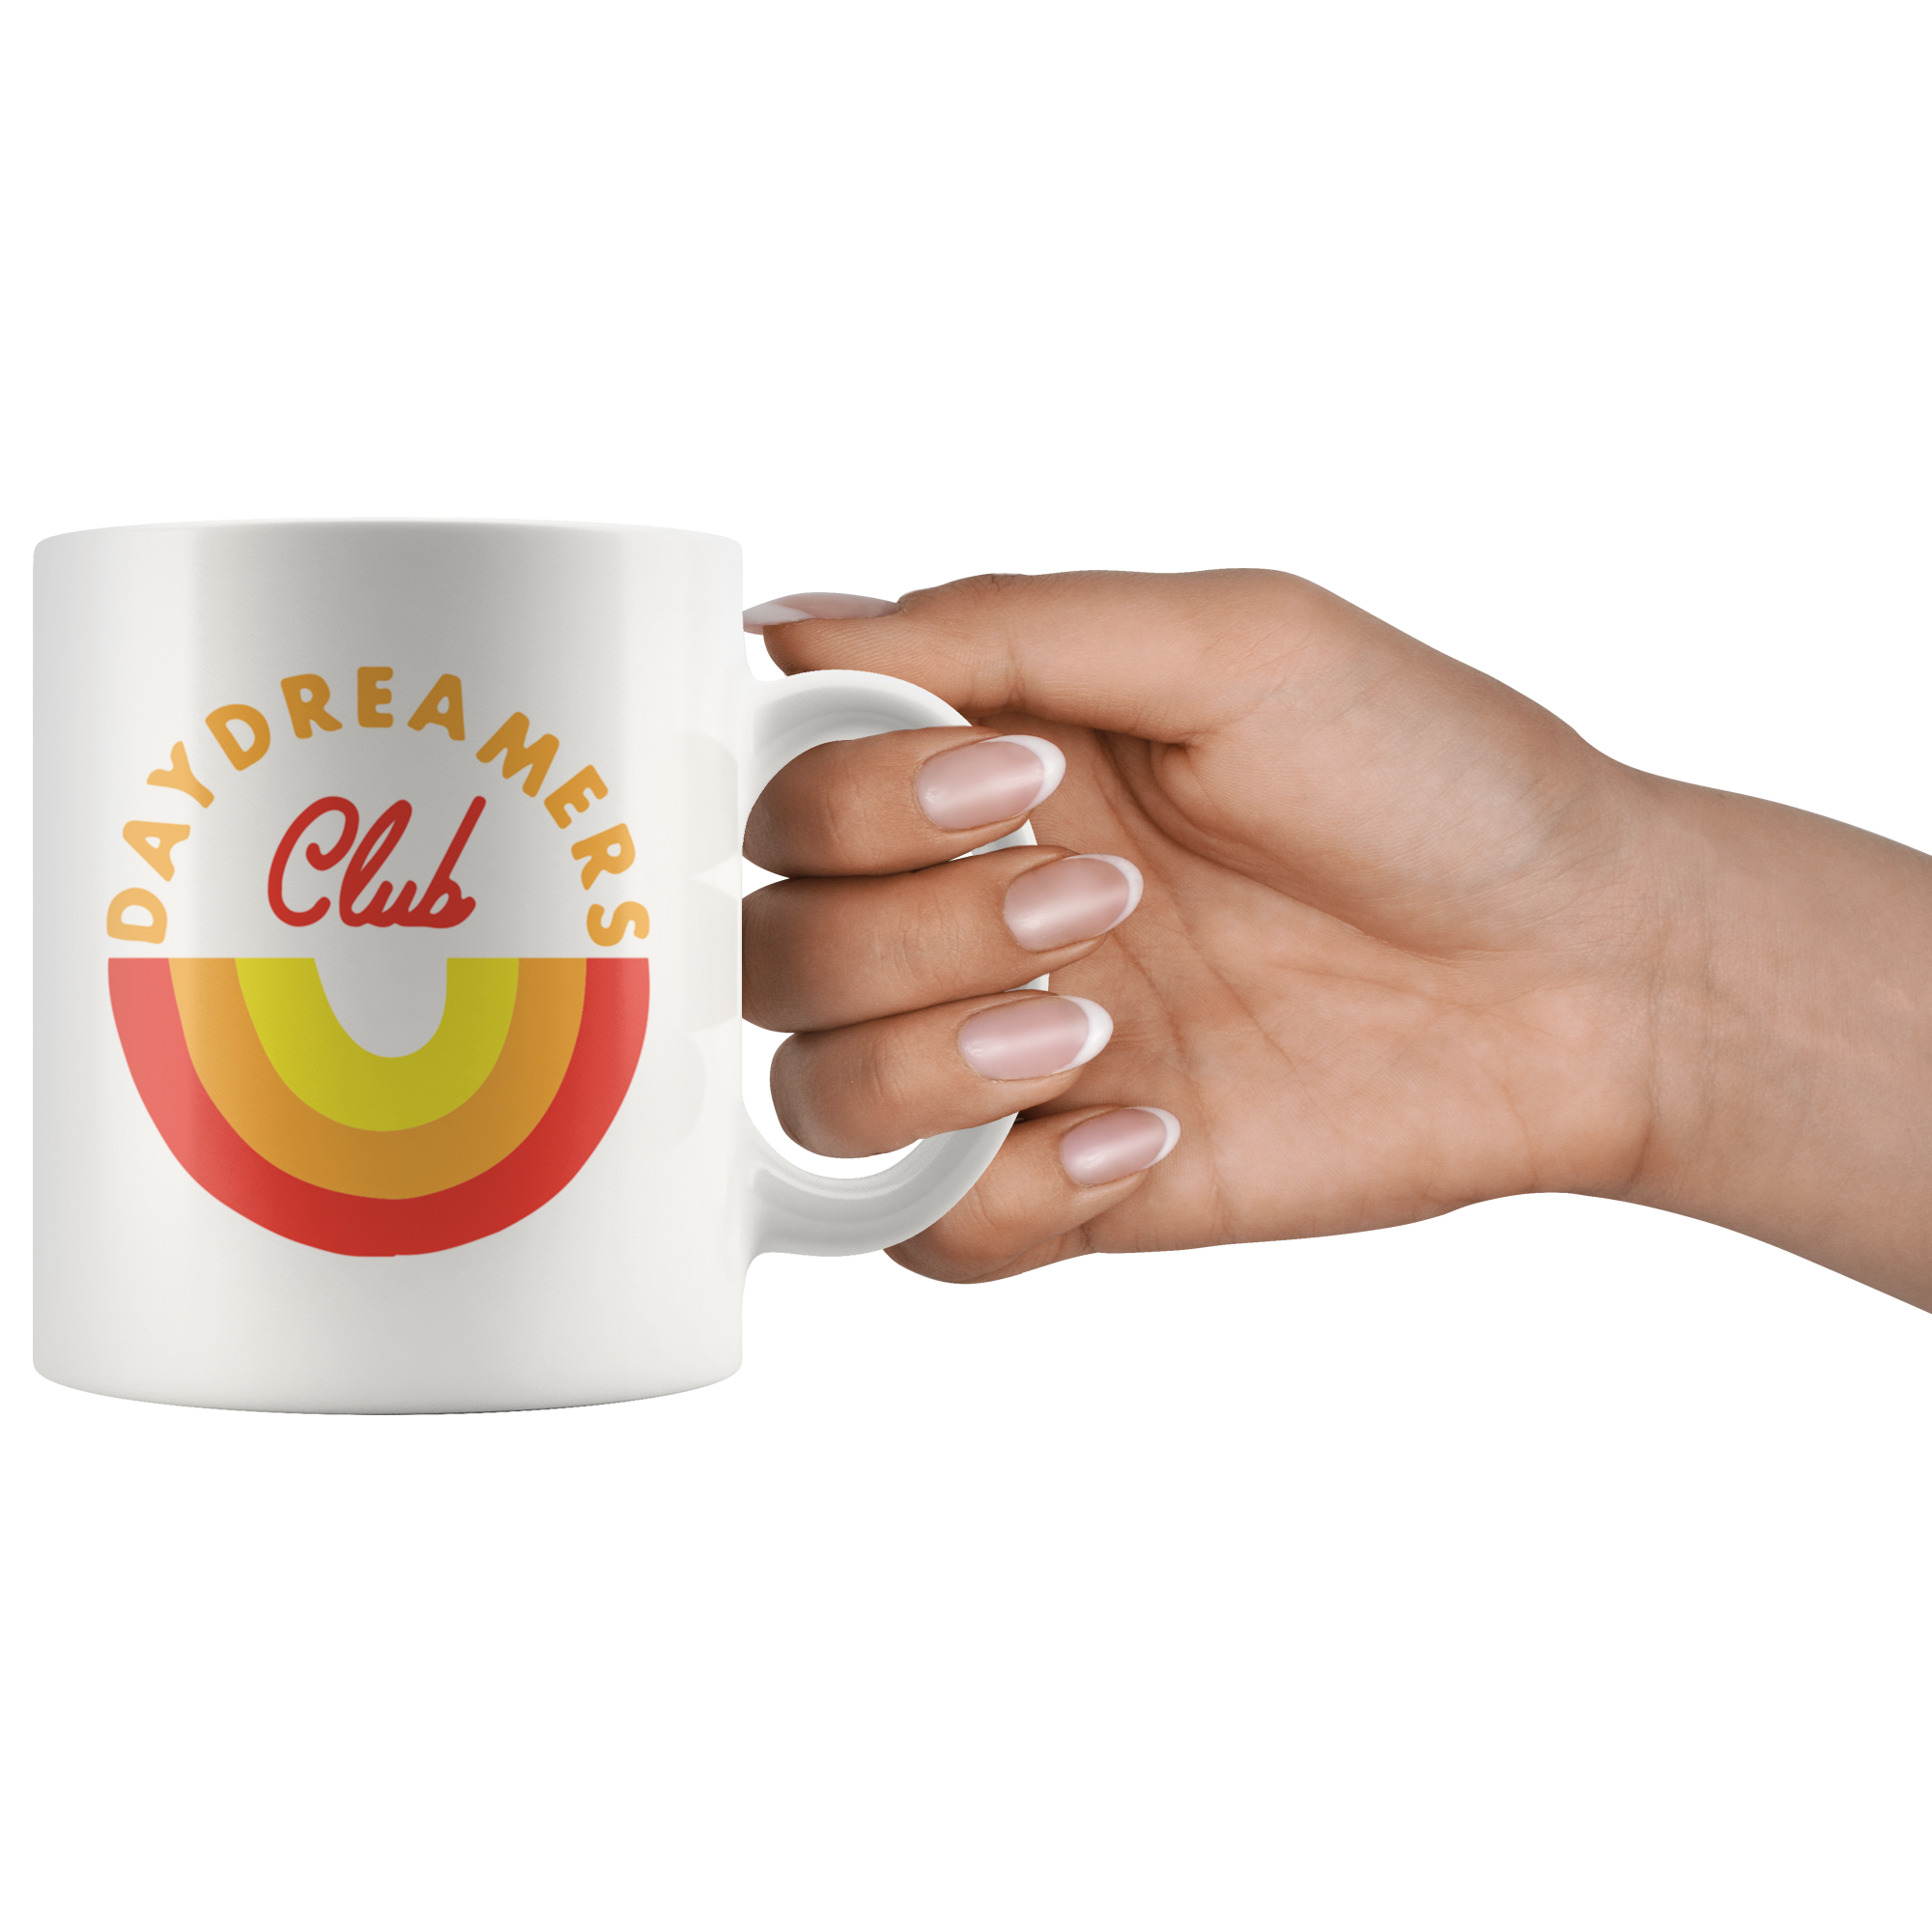 Daydreamers Club Coffee Mug